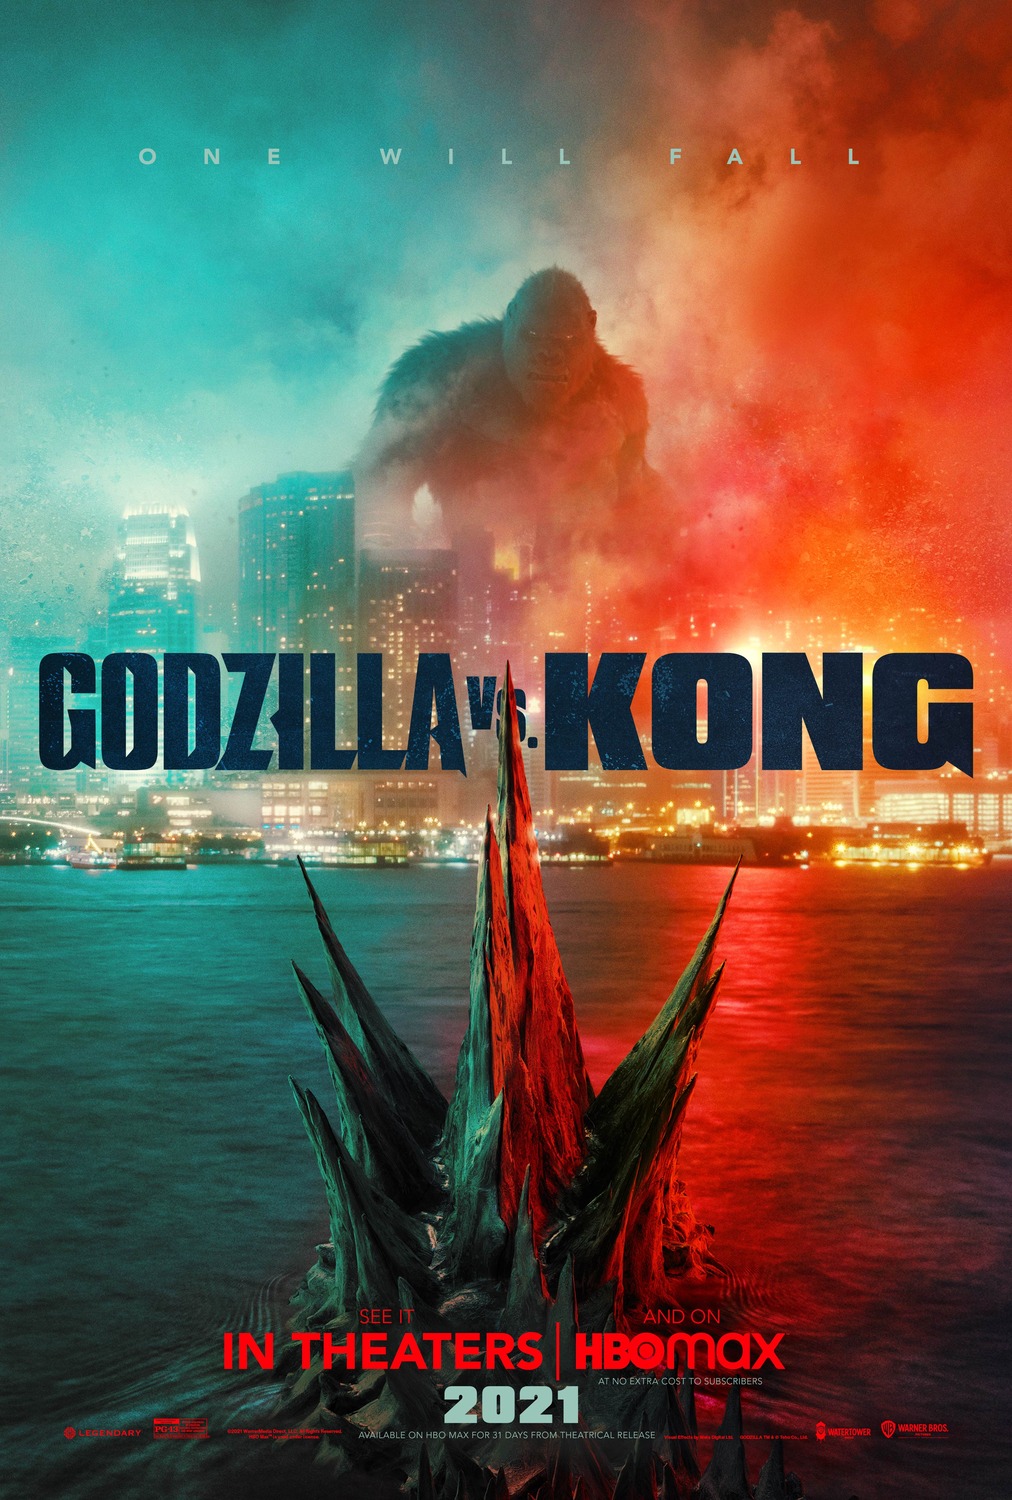 دانلود زیرنویس فارسی فیلم Godzilla vs. Kong 2021